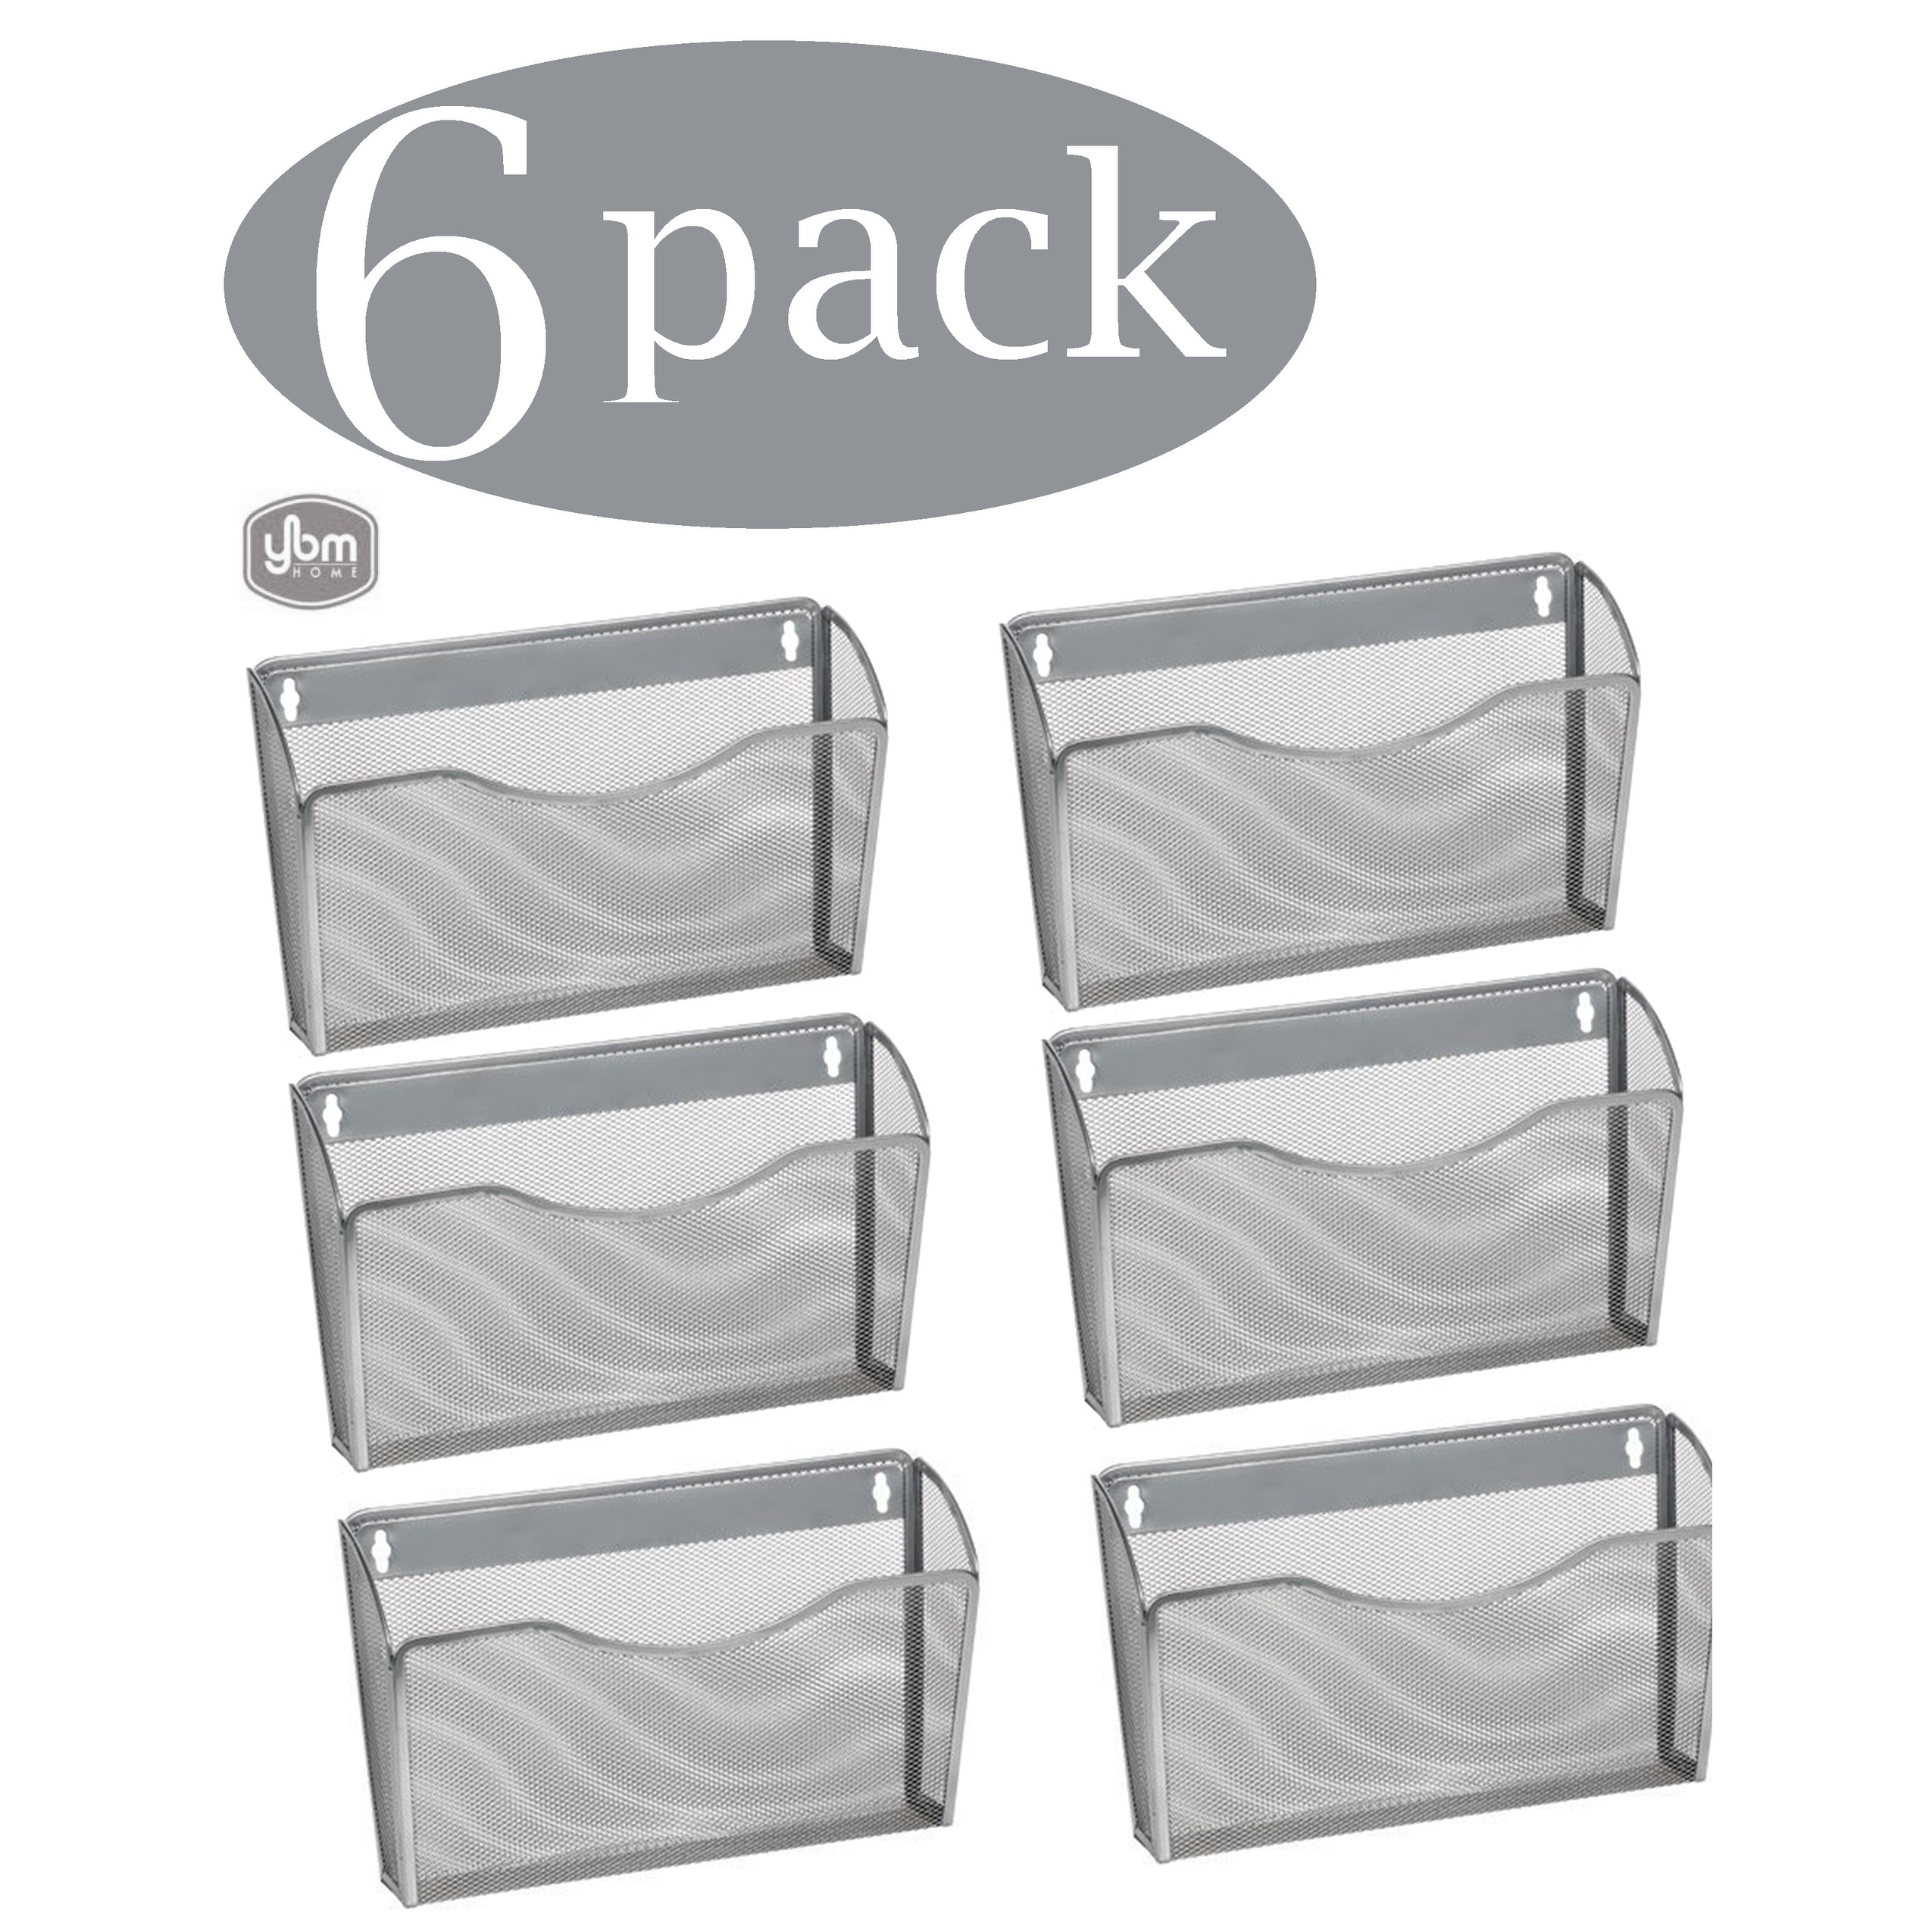 5 Pocket Wall Mounted File Hanging Organizer Metal Mesh Office Home Folder